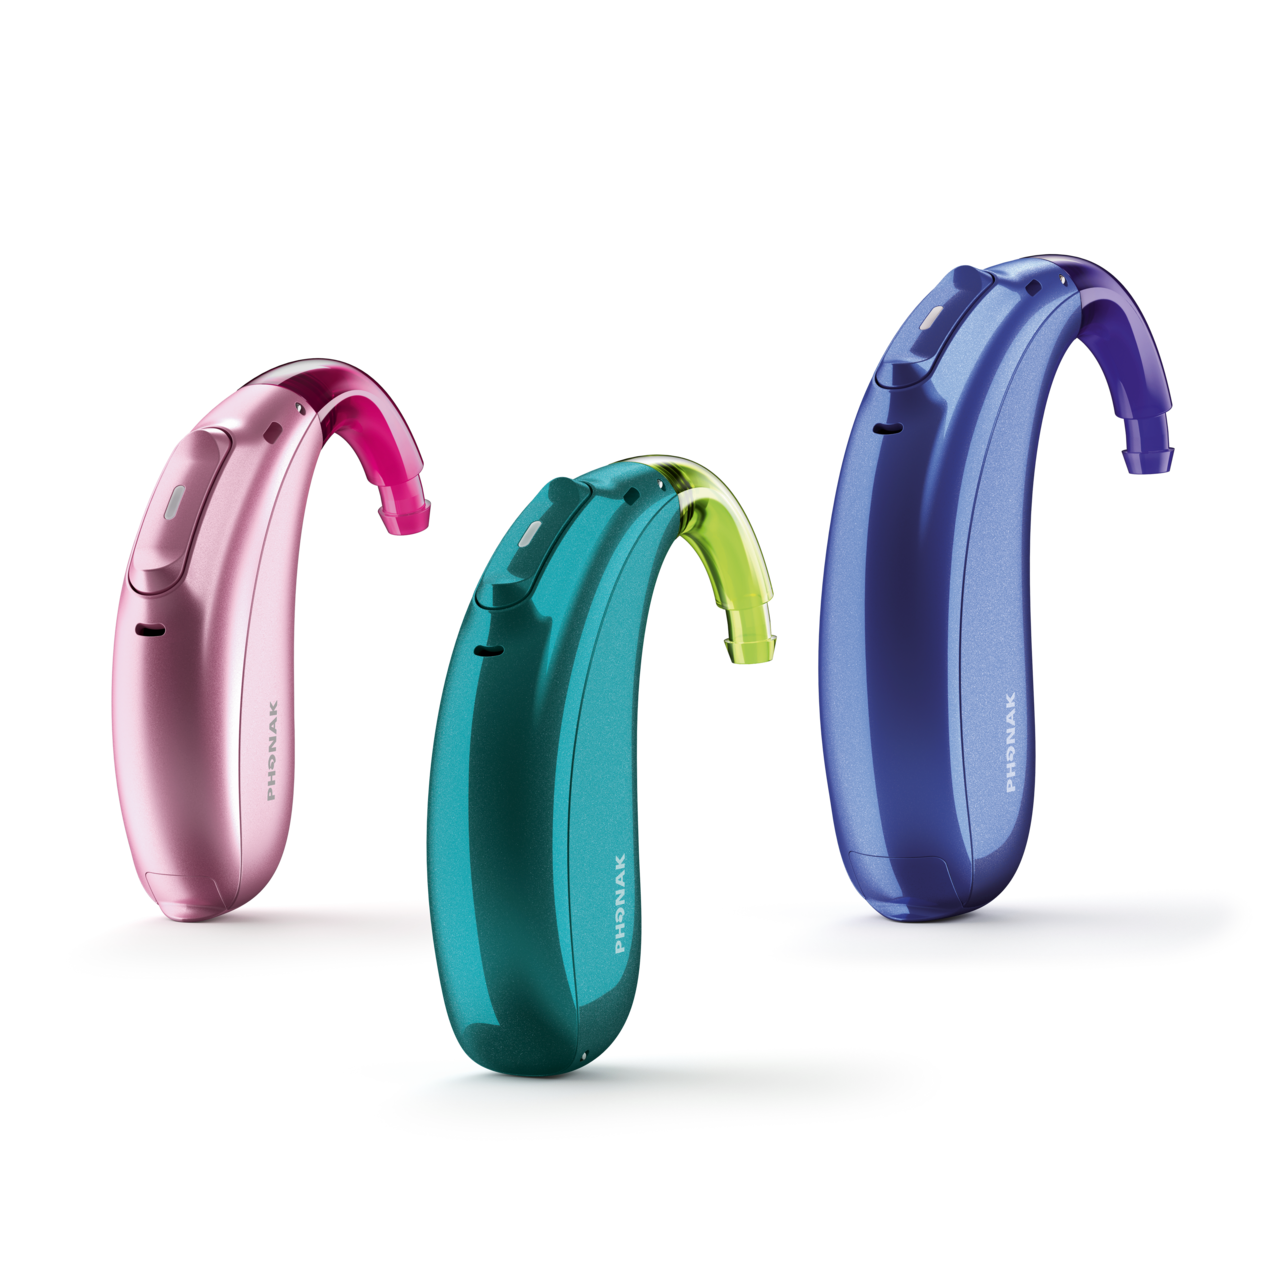 Tres audífonos Phonak Sky M en tres colores diferentes: rosa, verde azulado y azul marino.